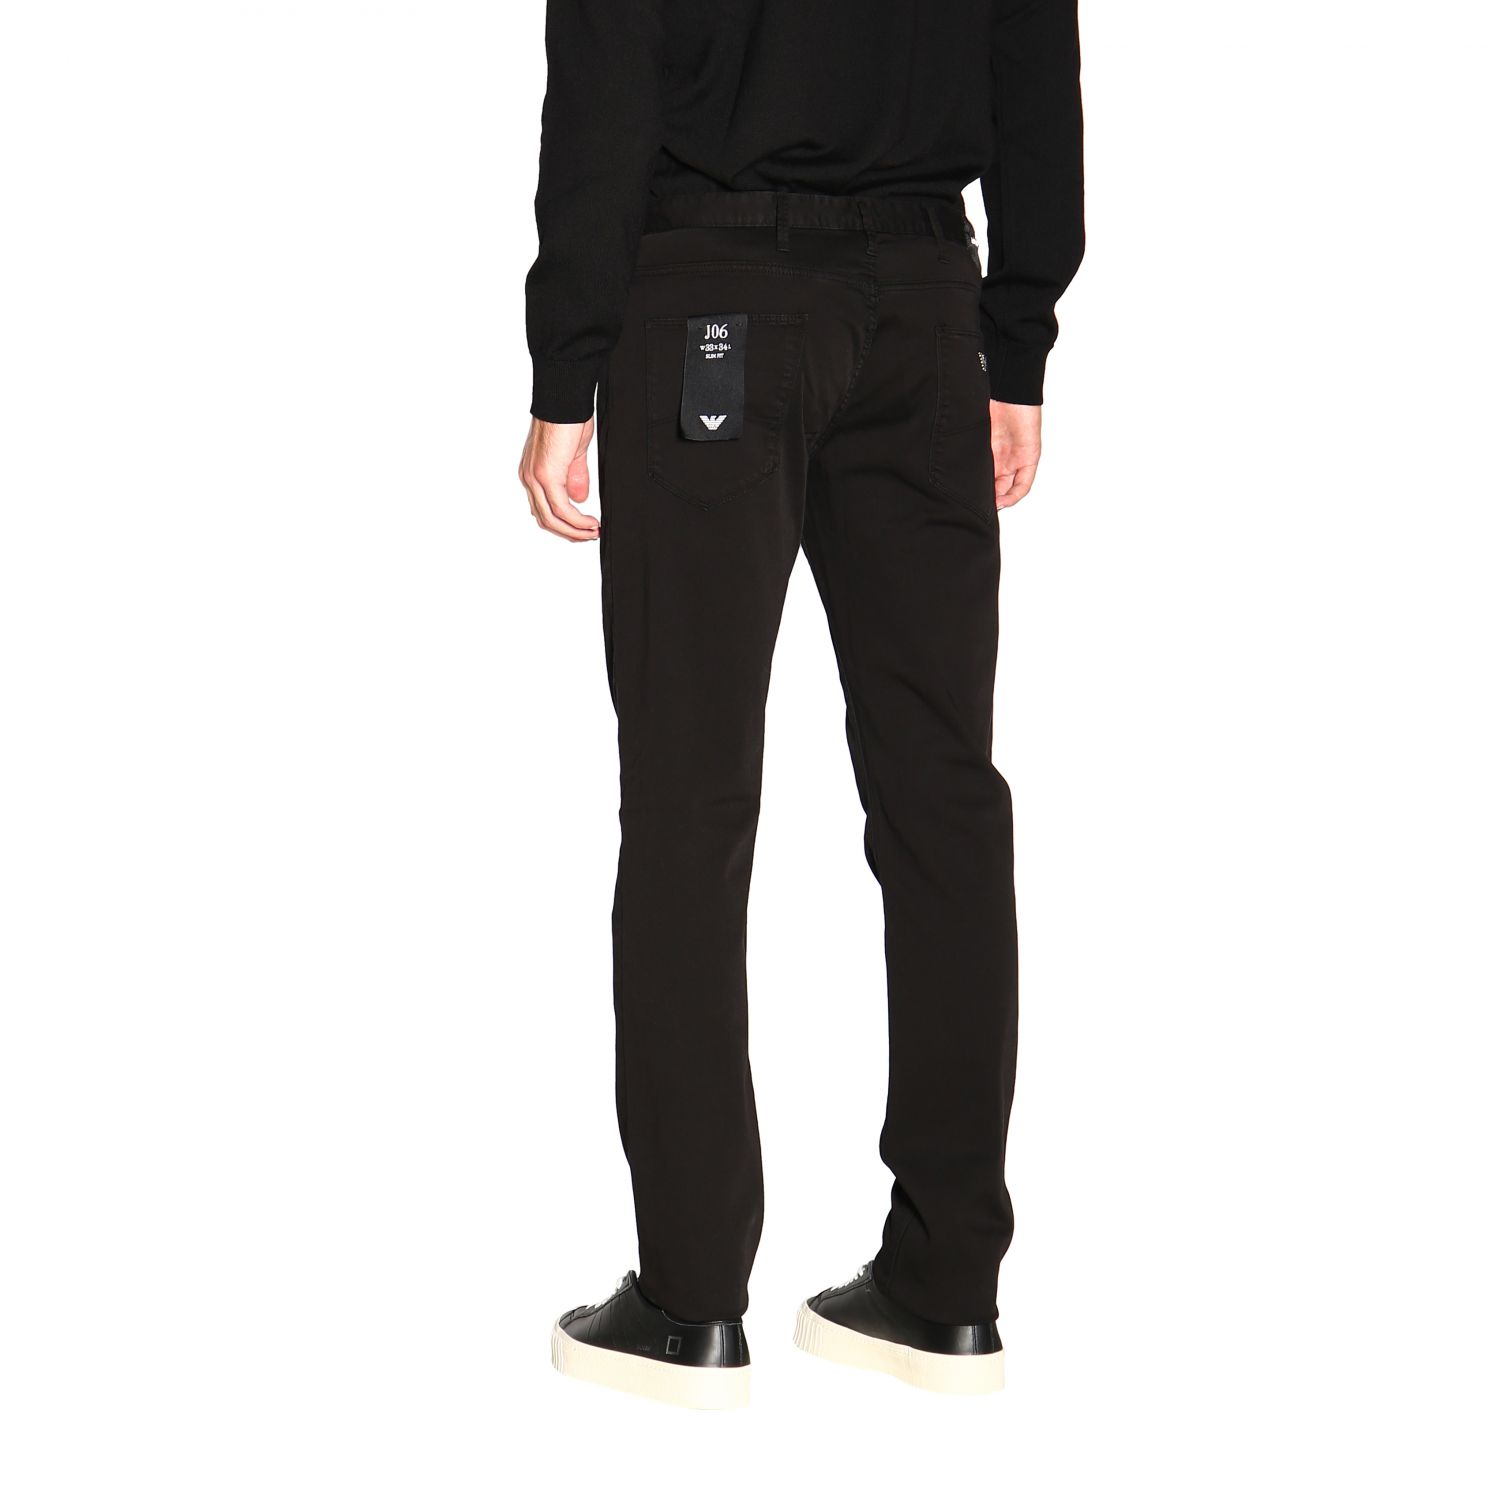 Pantalón Emporio Armani: Pantalón hombre Emporio Armani negro 3